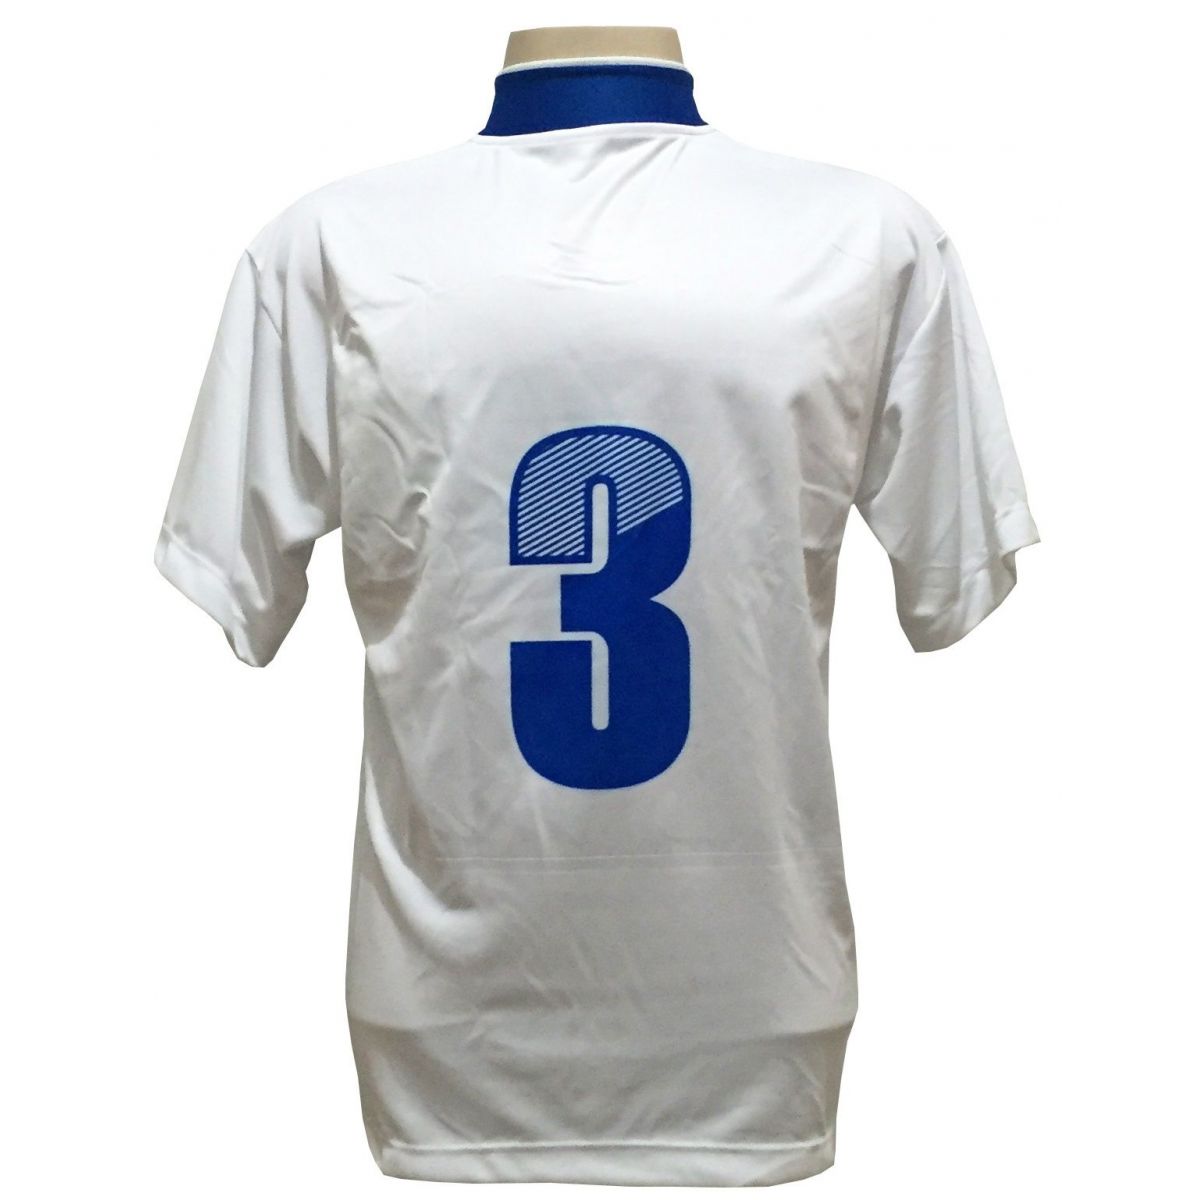 Uniforme Esportivo com 14 camisas modelo Suécia Branco/Royal + 14 calções modelo Copa Royal/Branco + Brindes